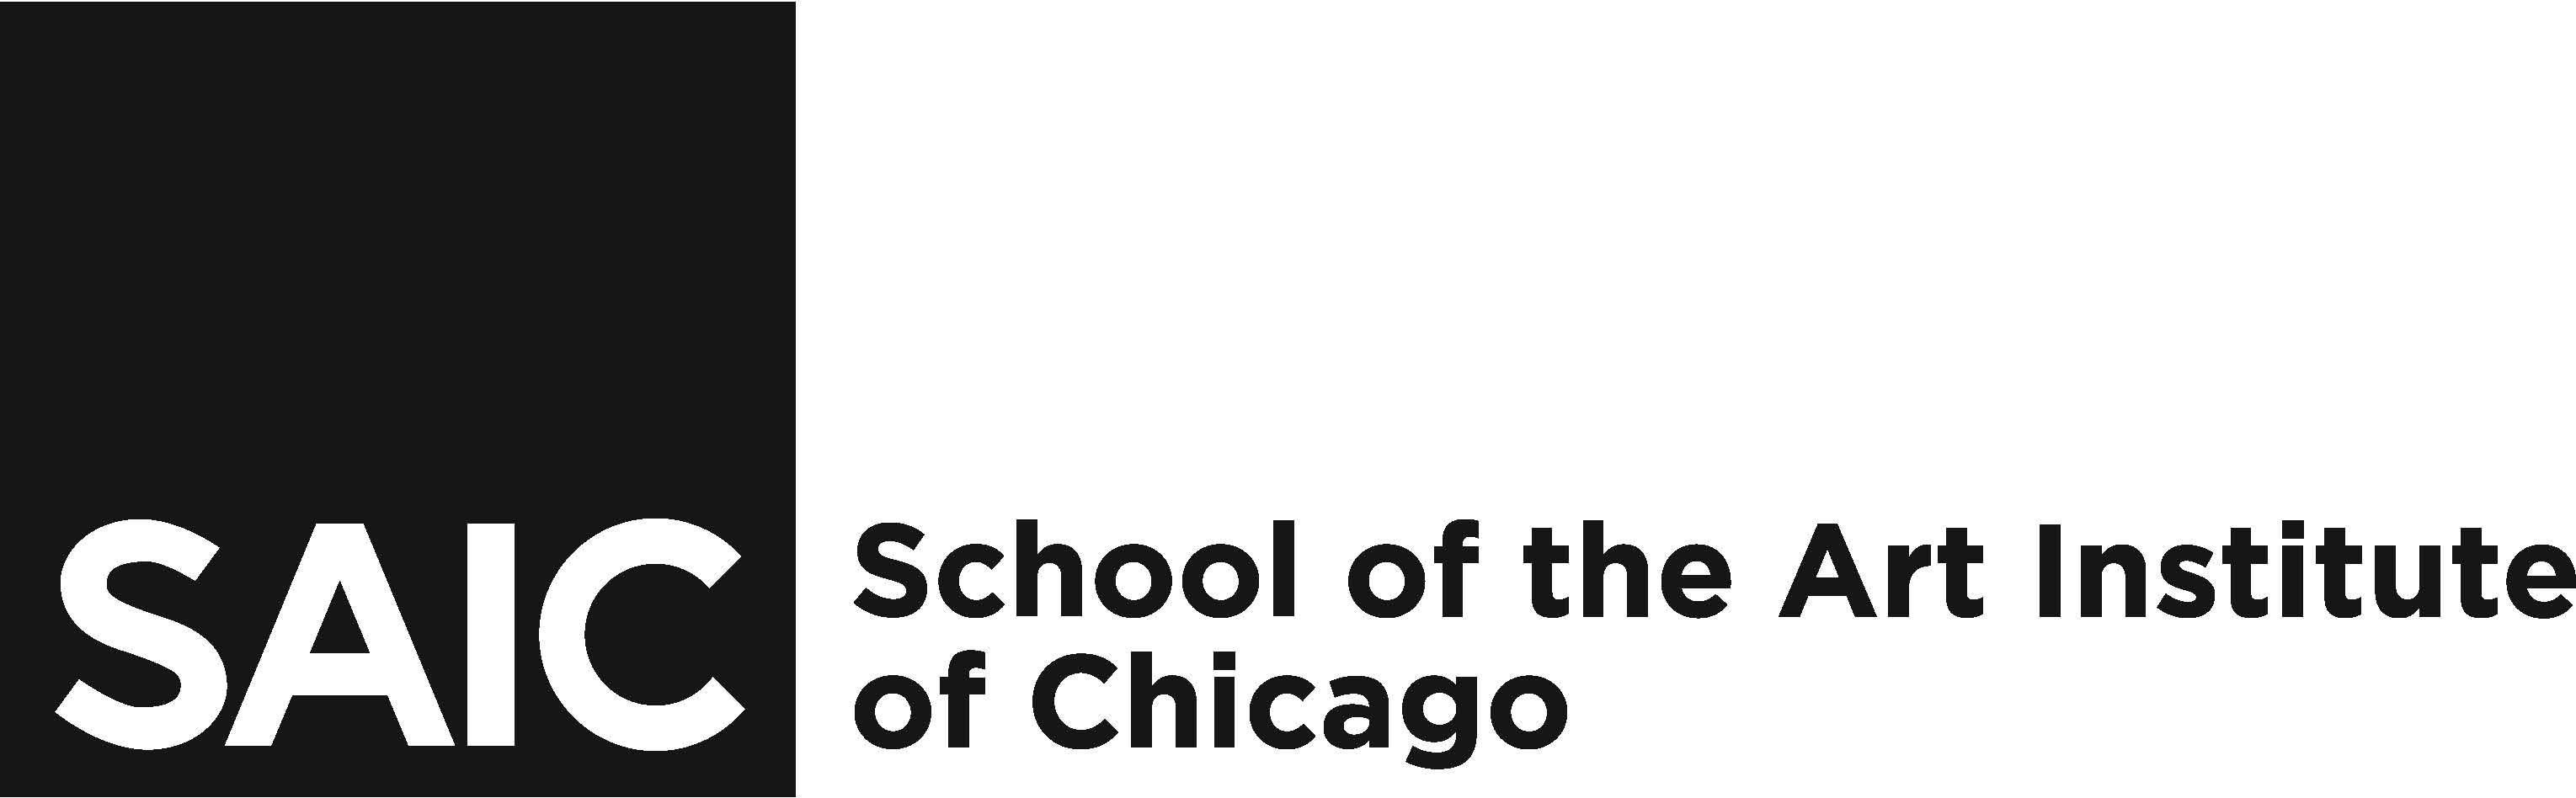 Illinois institute art chicago admissions essay